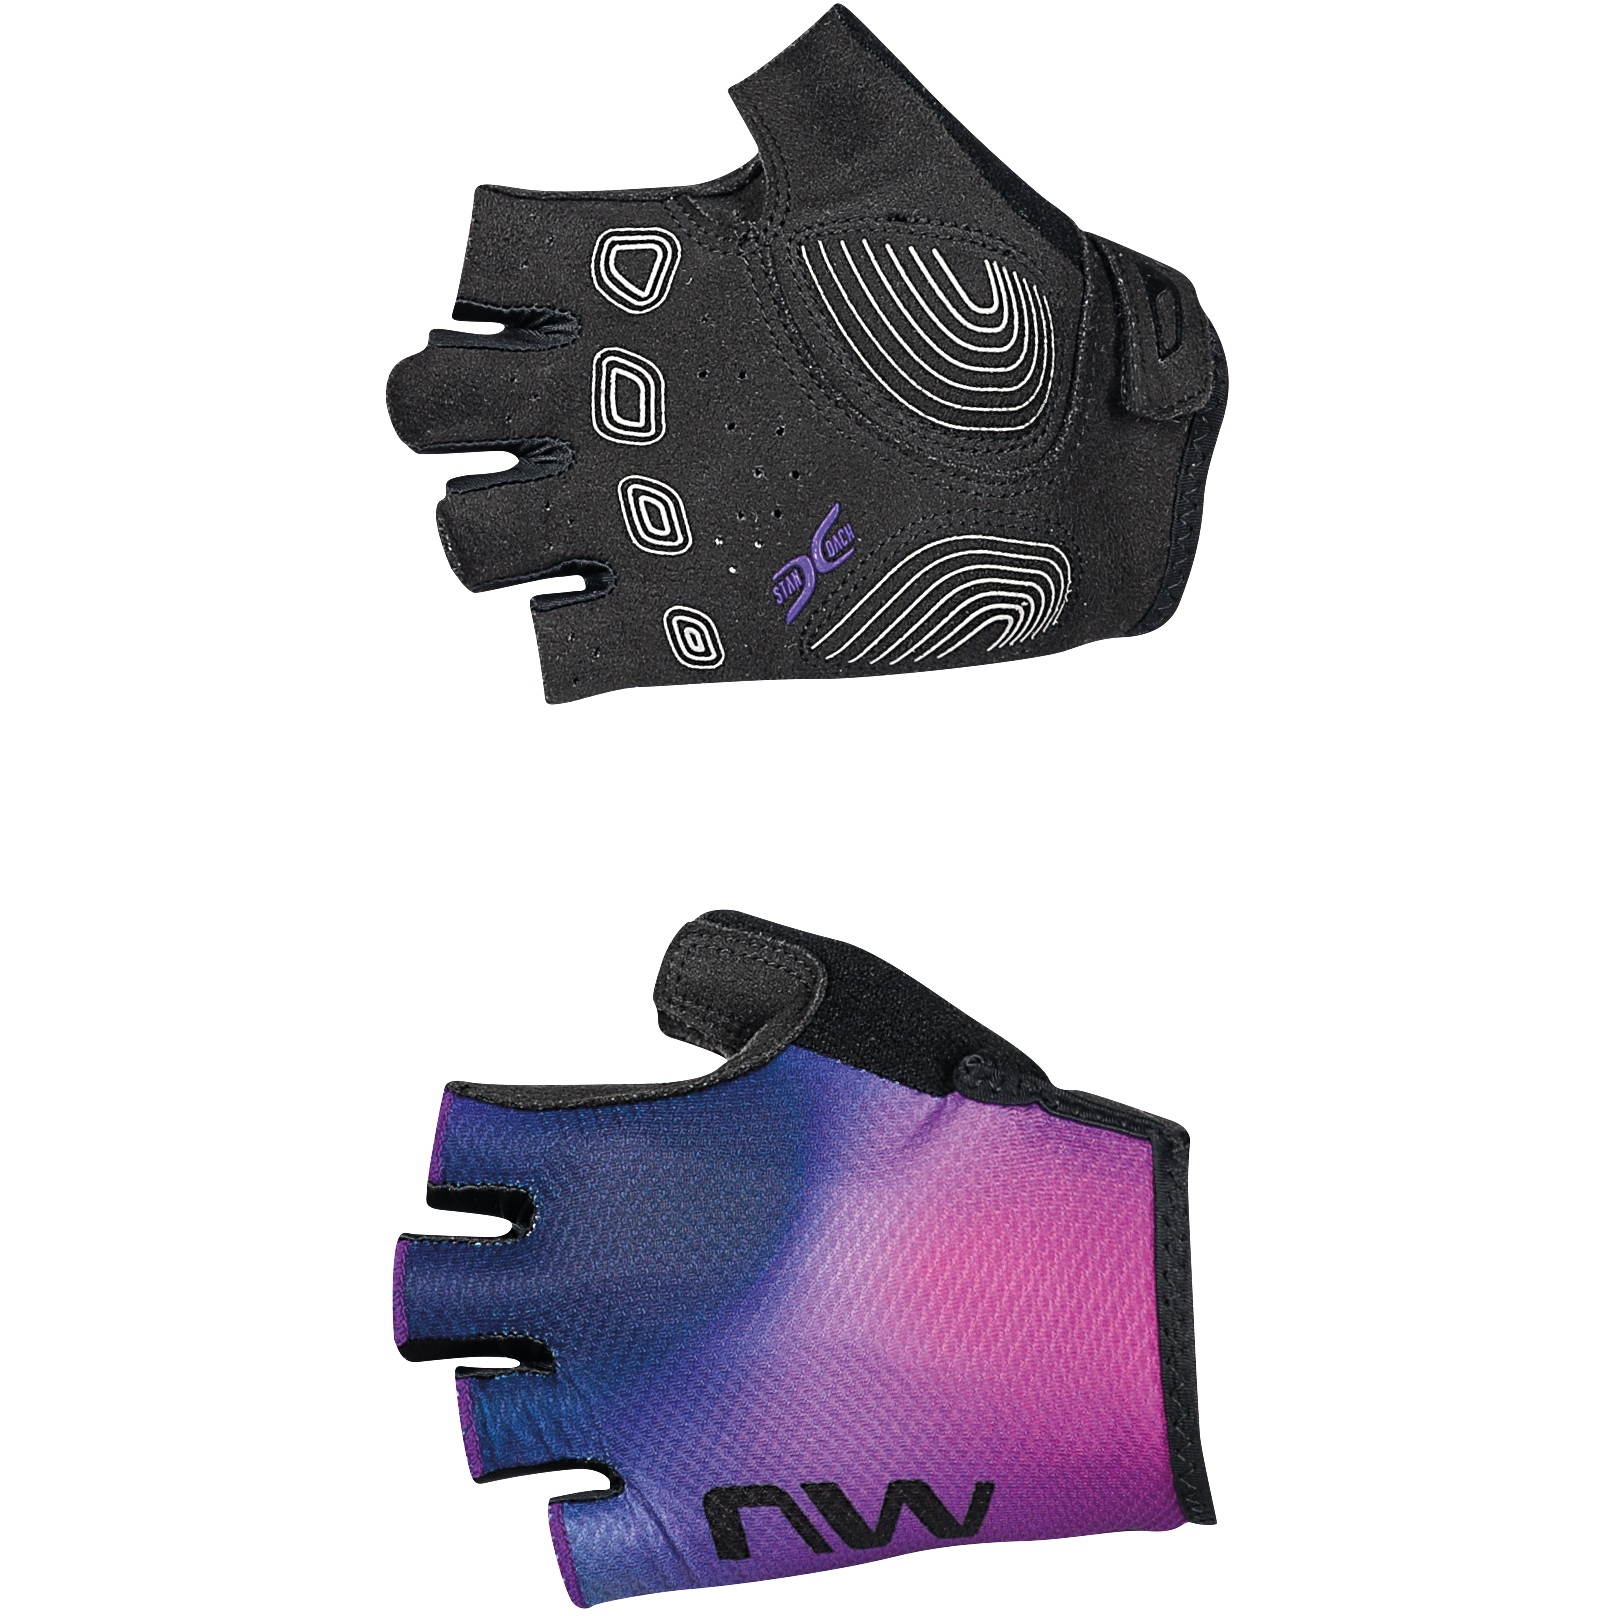 Produktbild von Northwave Active Kurzfinger-Handschuhe Damen - schwarz/iridescent 16